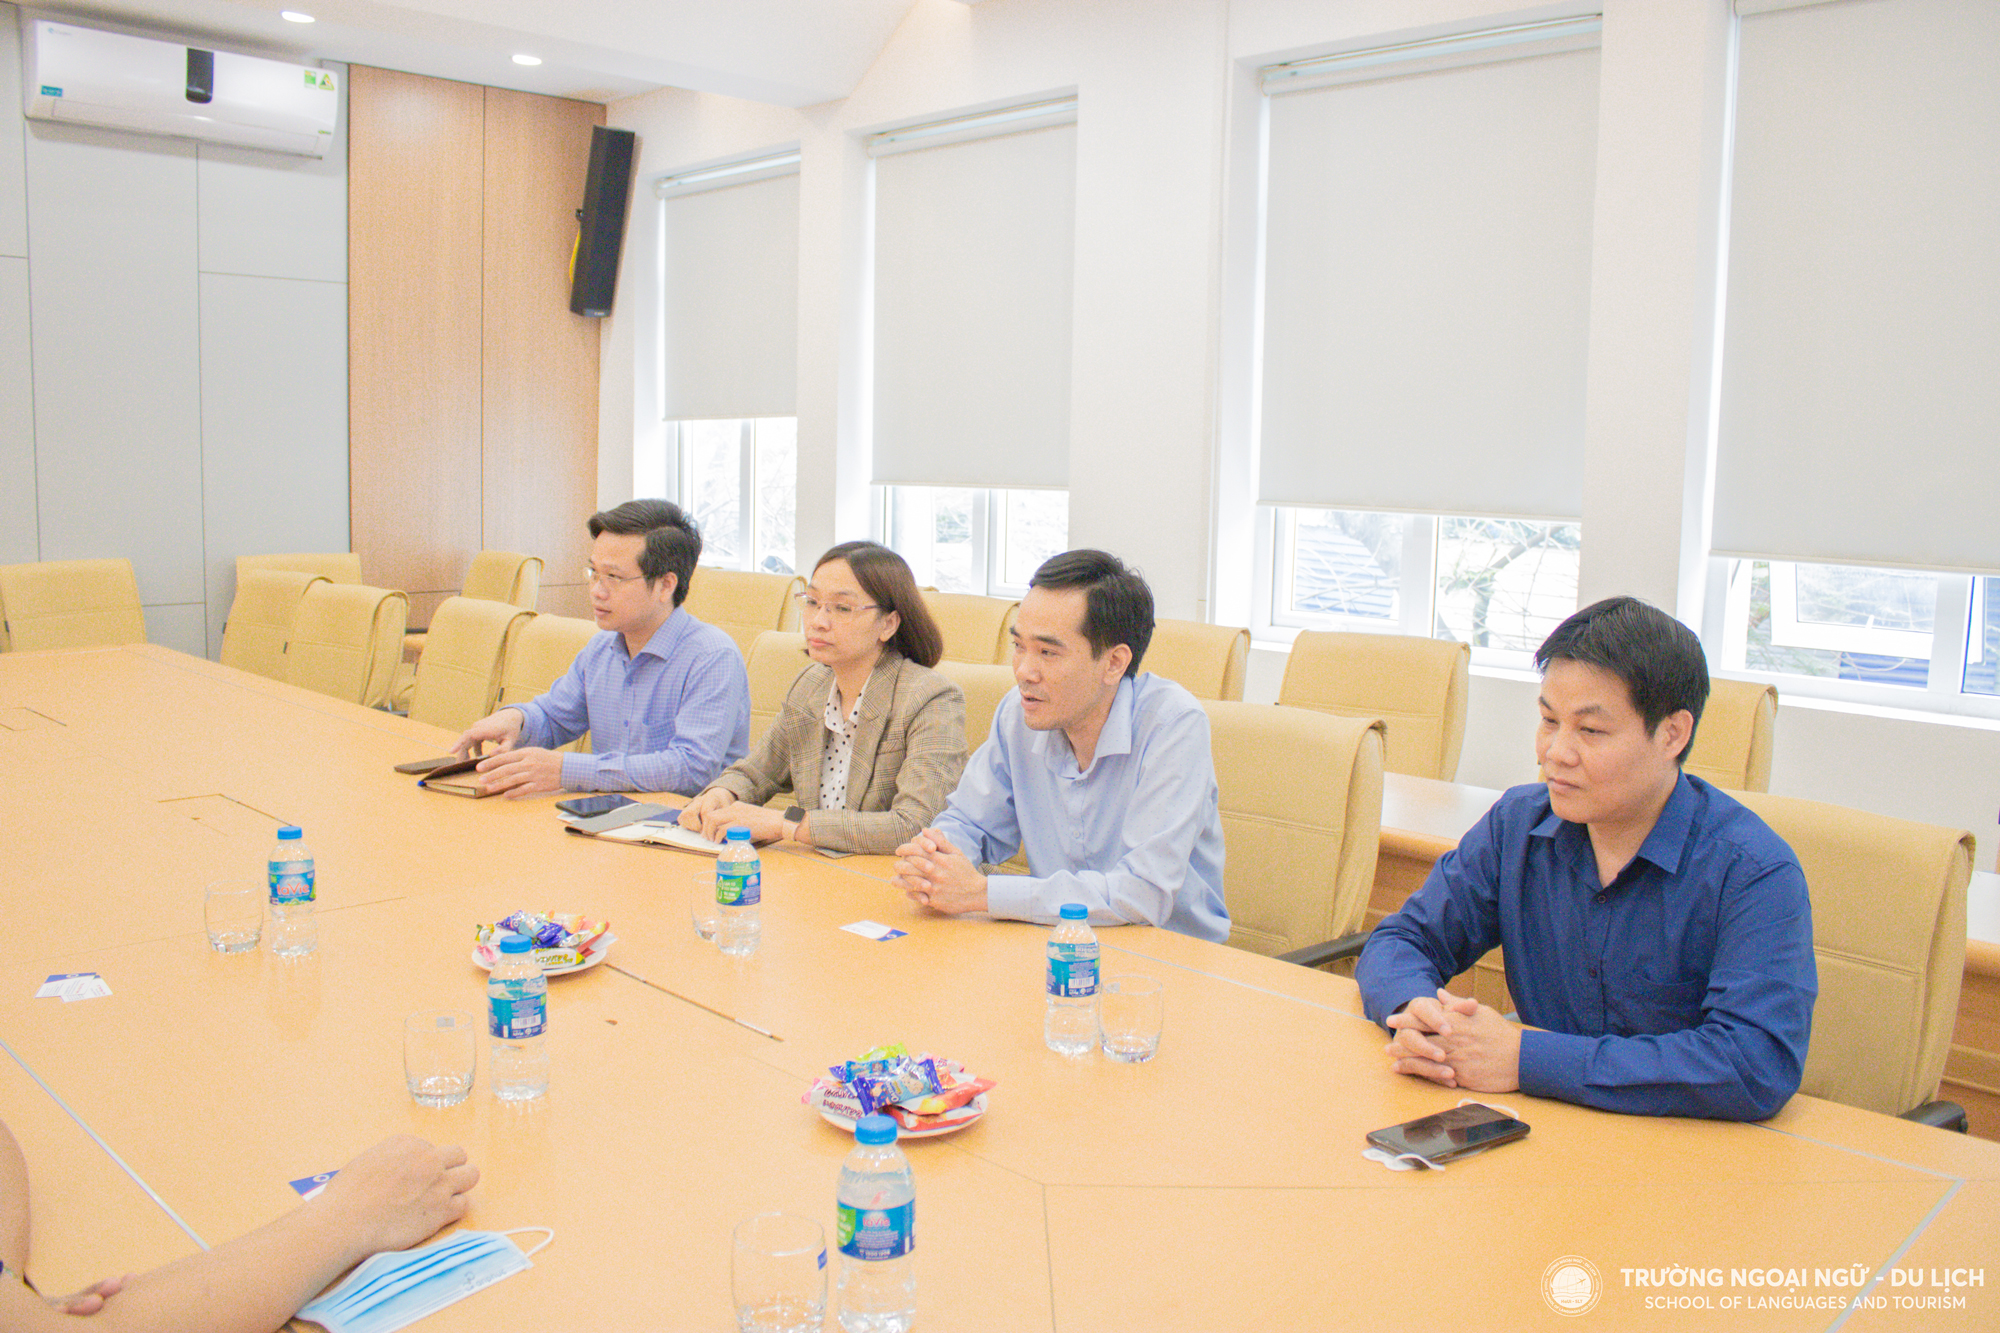 Trường Ngoại ngữ - Du lịch , Đại học Công nghiệp Hà Nội tăng cường giao lưu với các đối tác doanh nghiệp và nghiên cứu